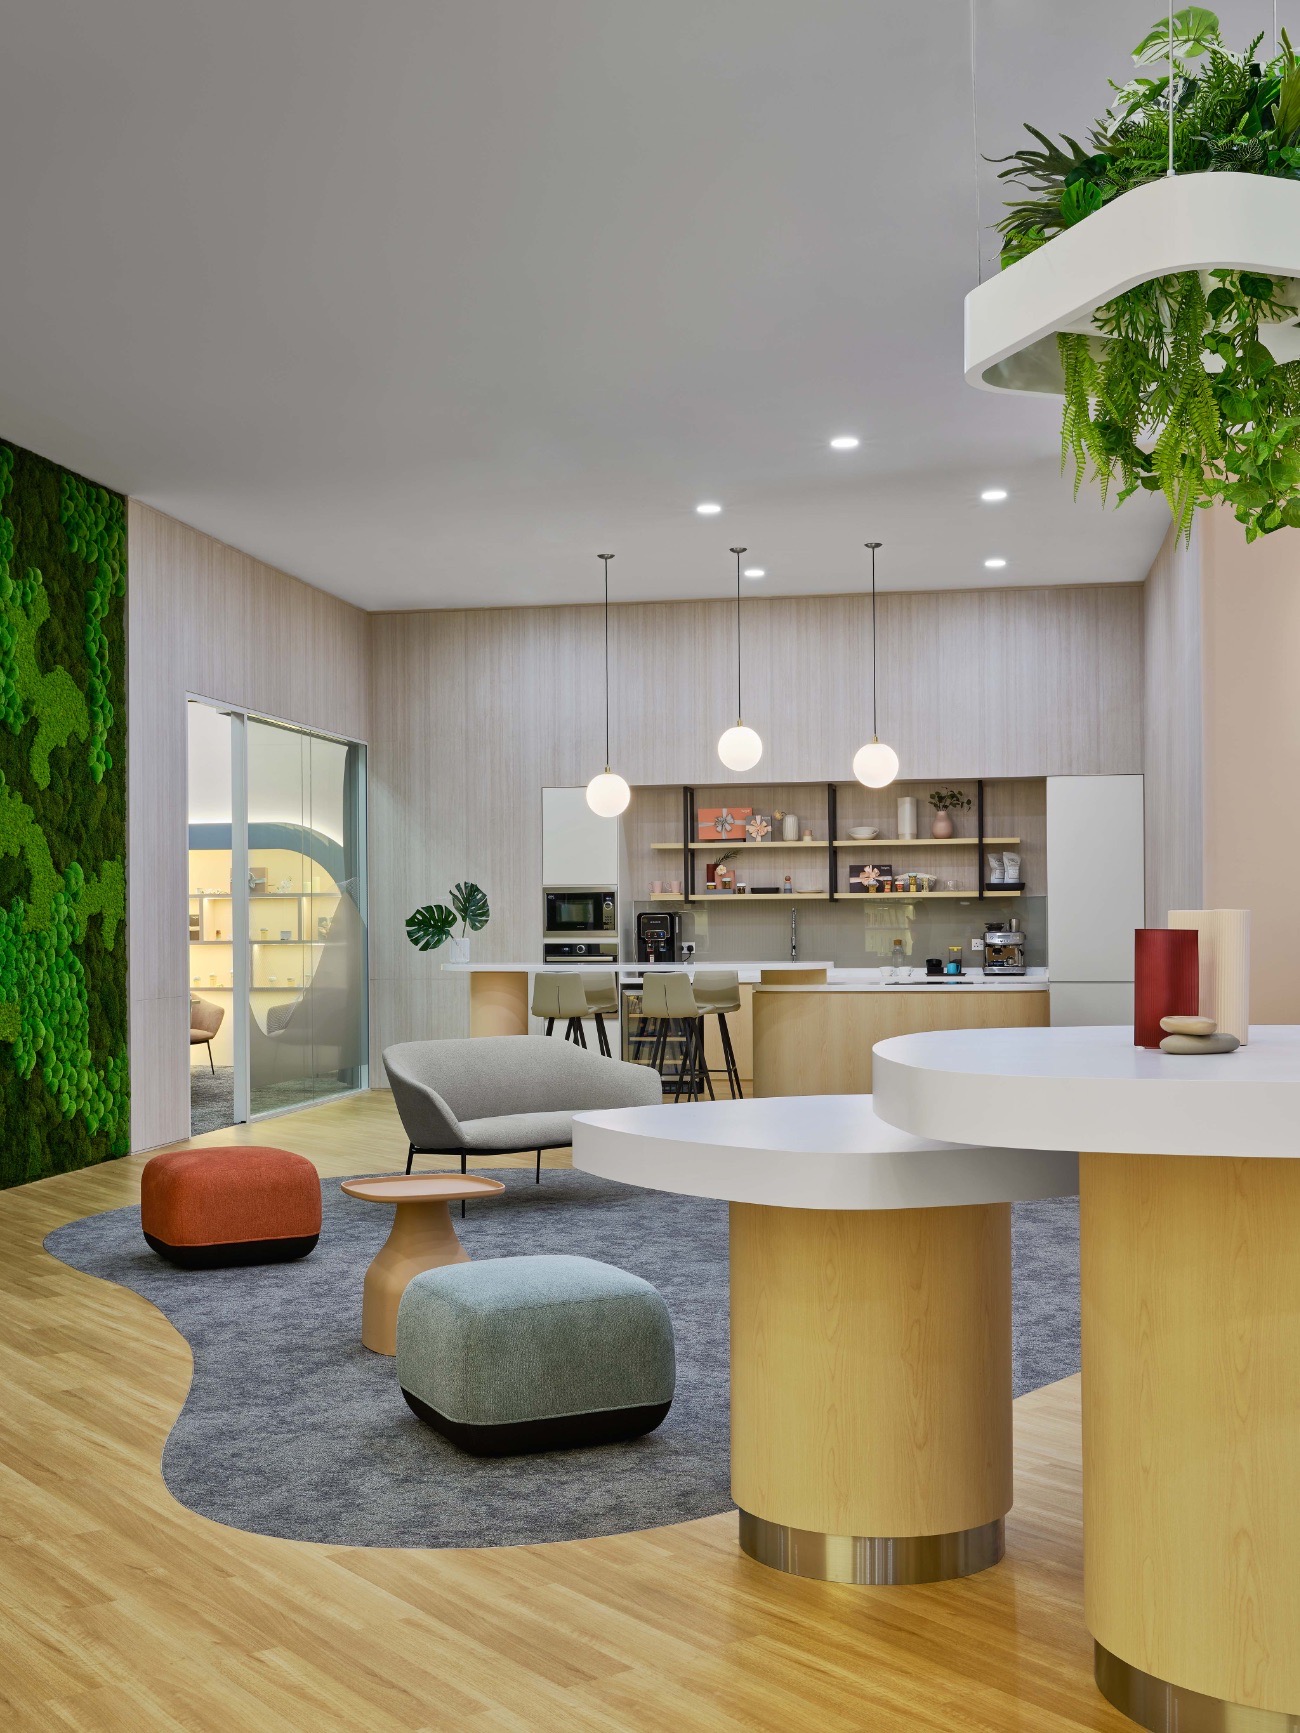 【 Hegenのオフィスデザイン】- シンガポールのカフェスペース